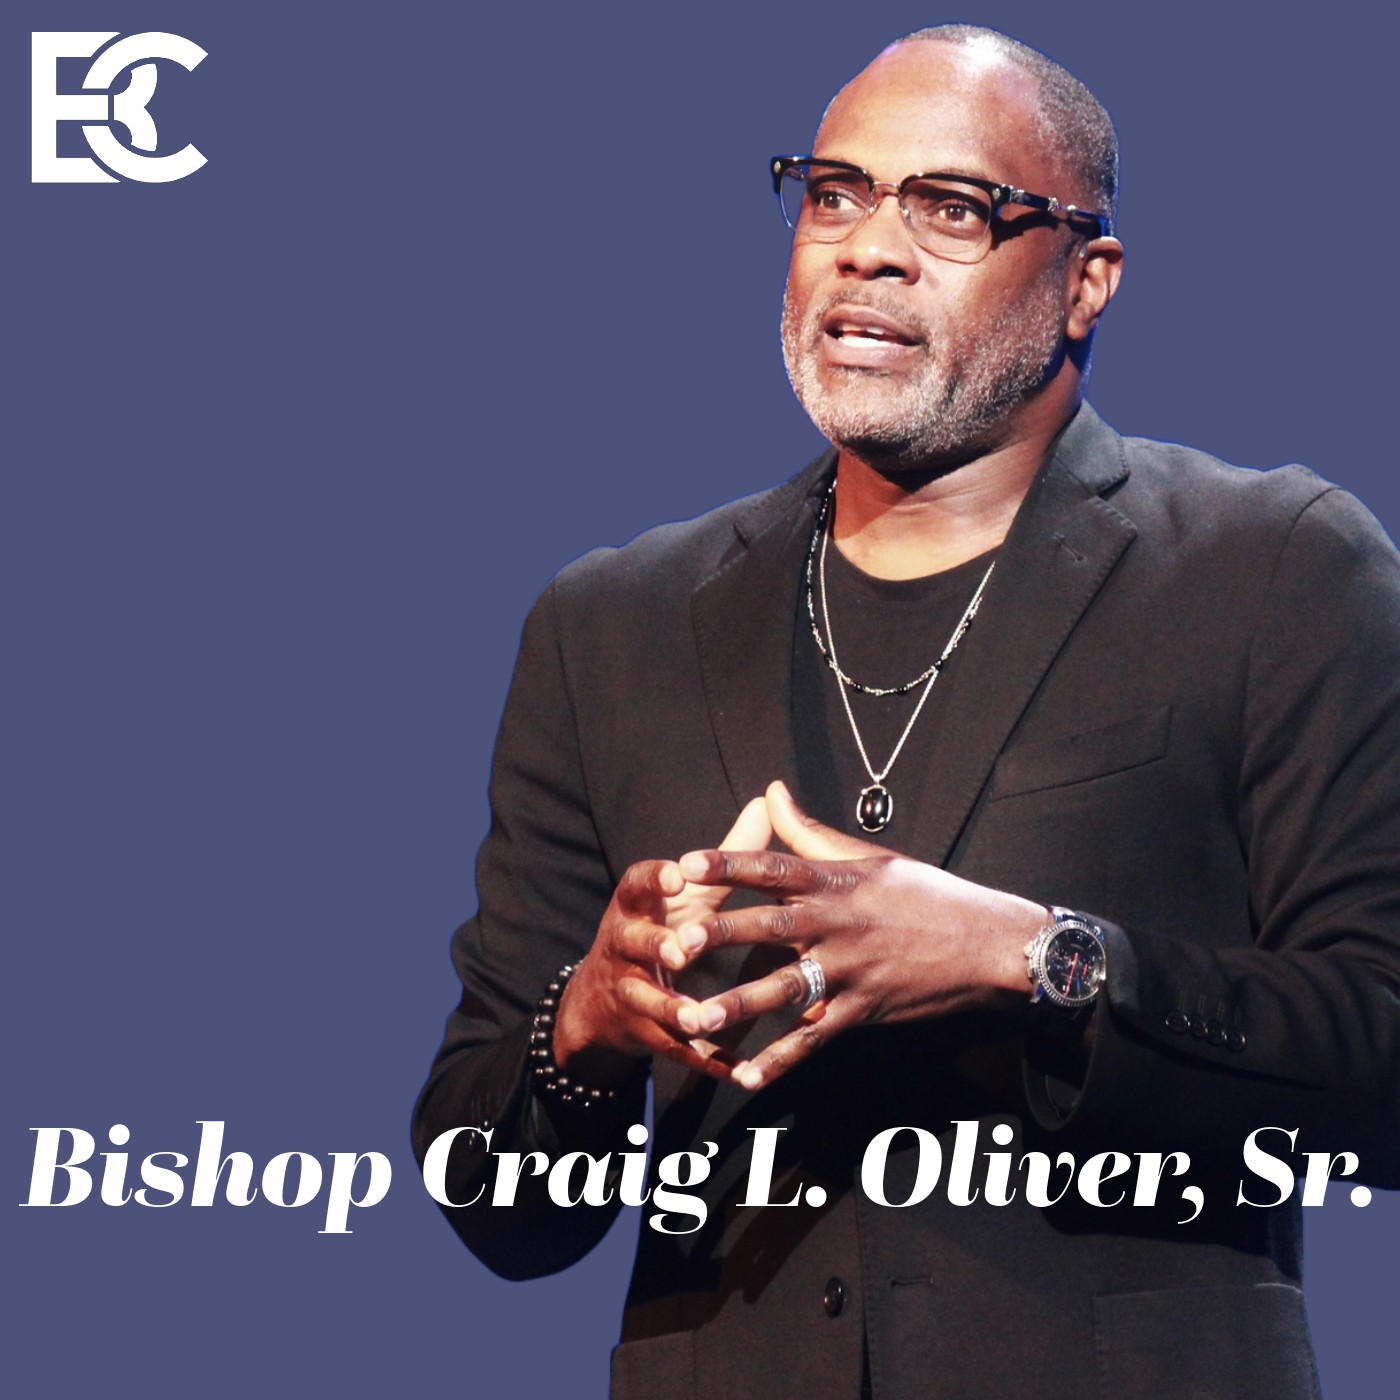 Bishop Craig L. Oliver, Sr. of Elizabeth Baptist Church